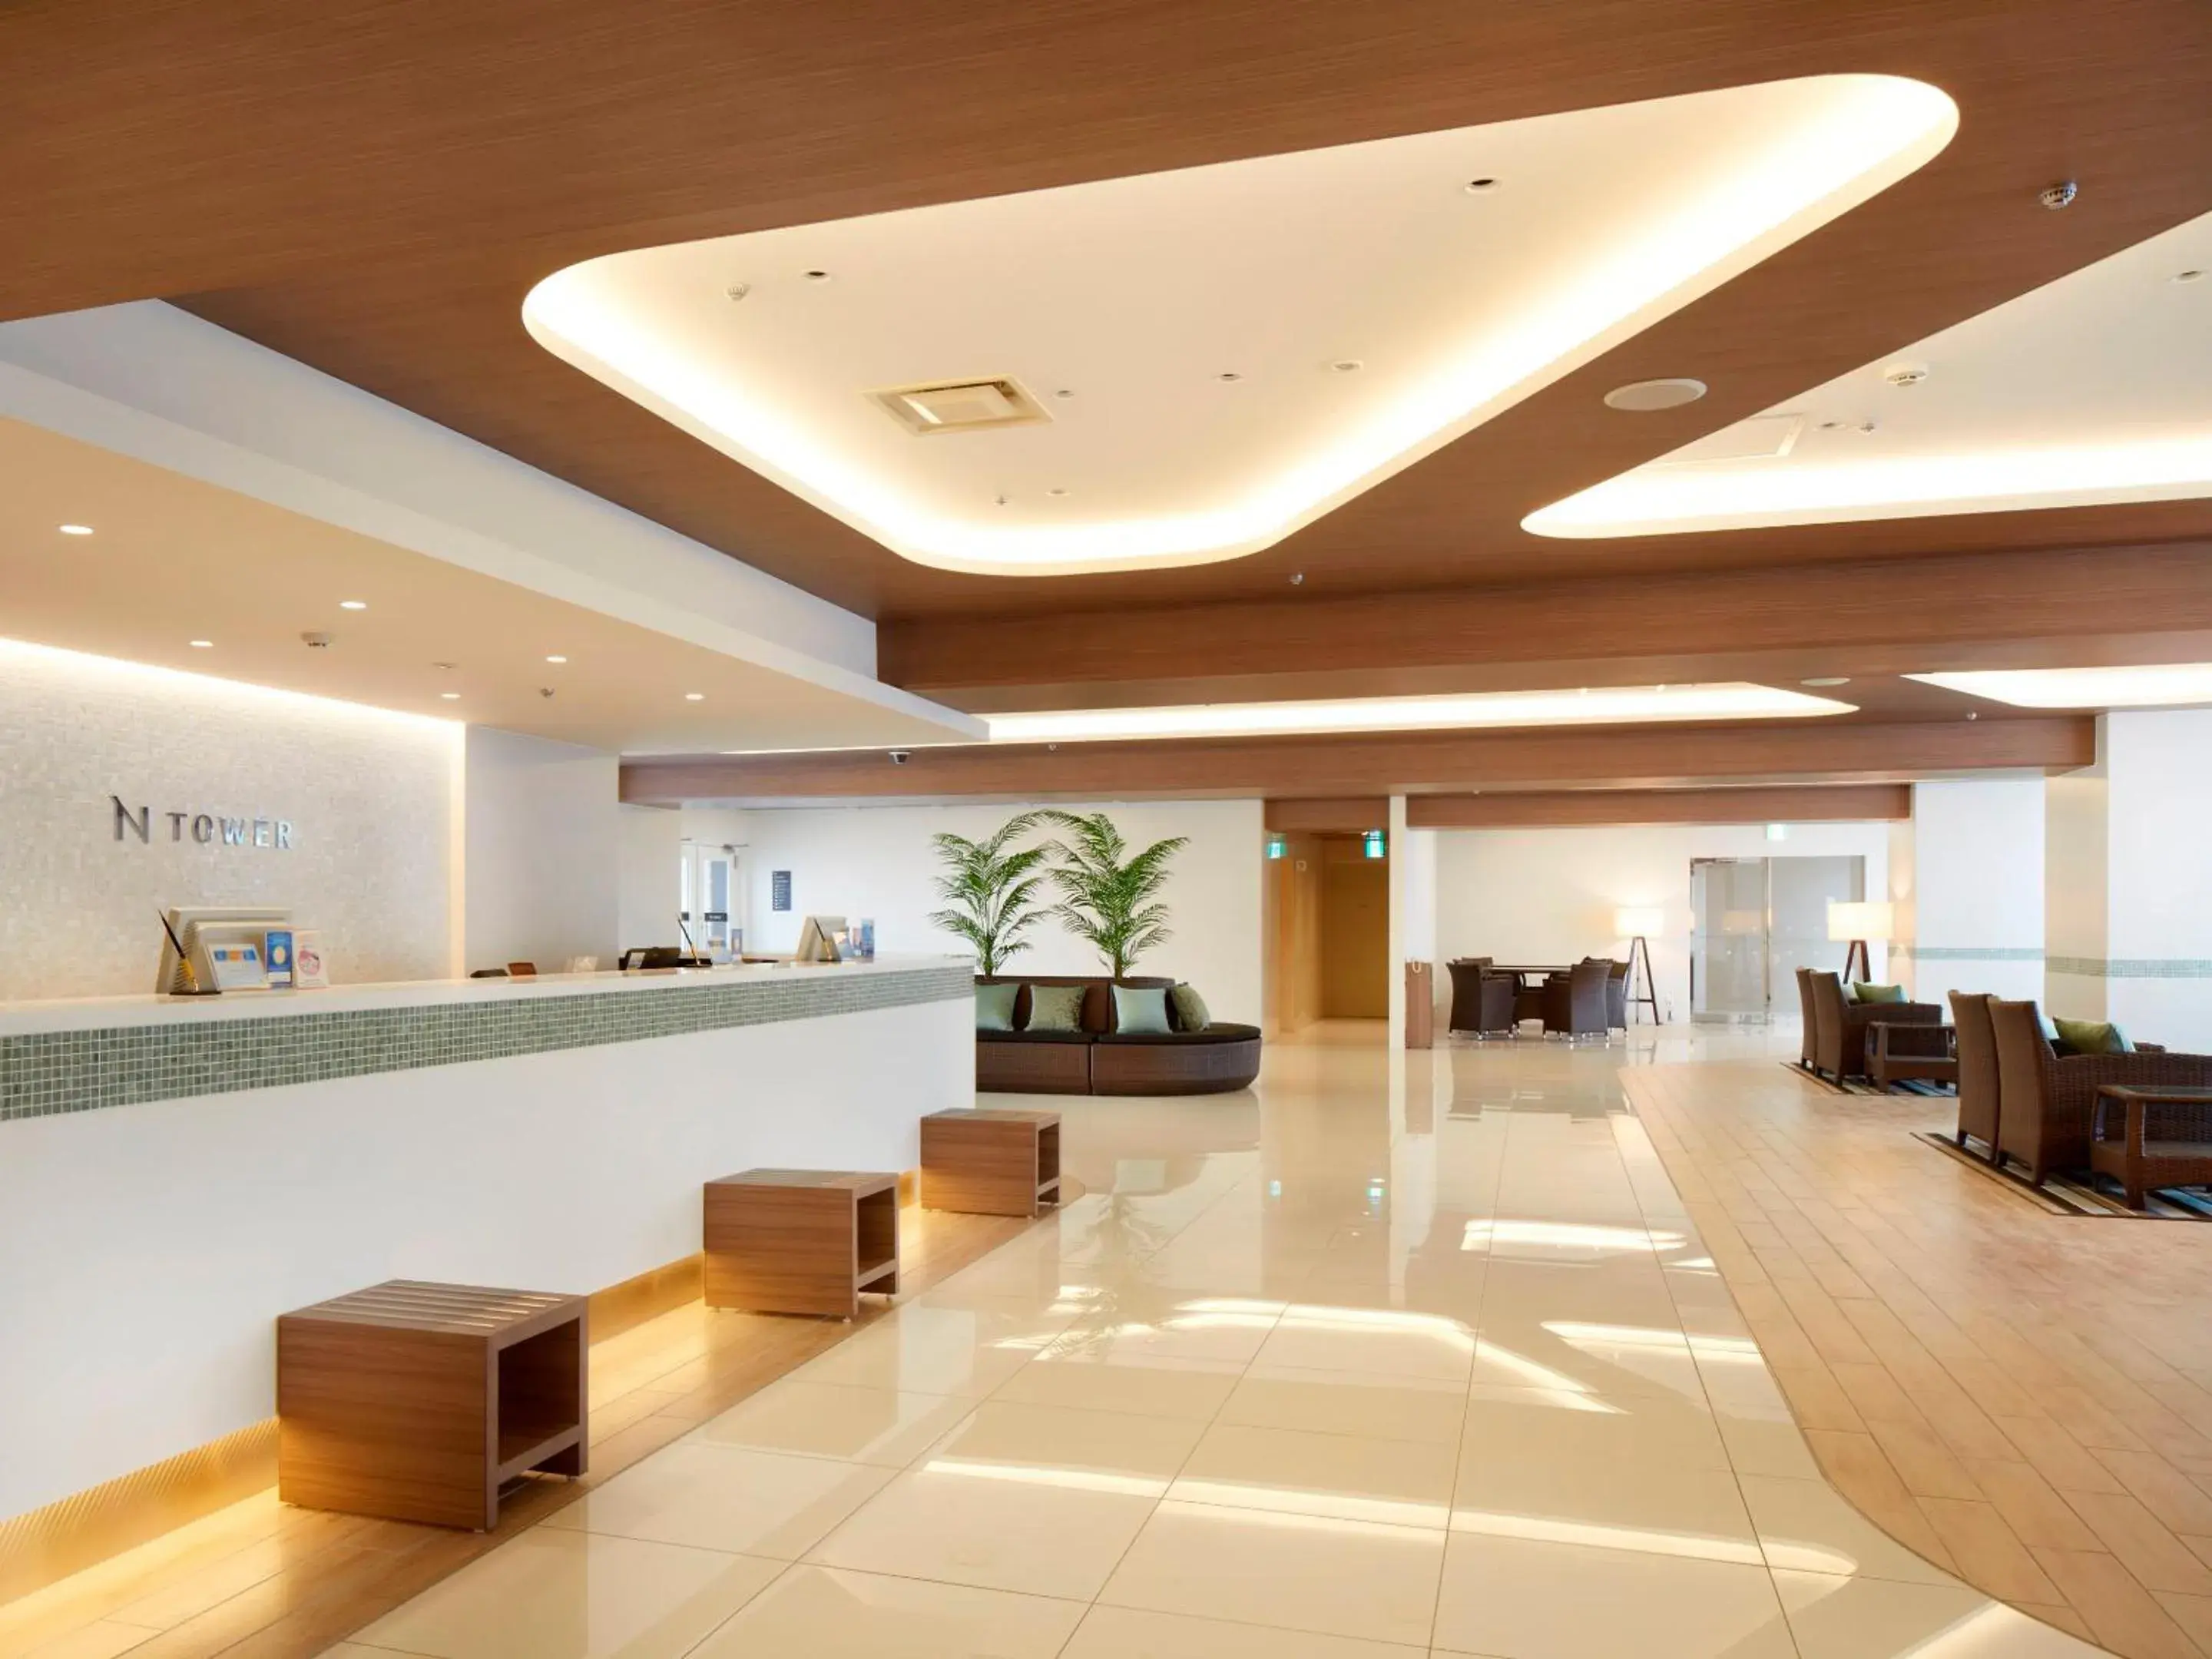 Lobby or reception, Lobby/Reception in Shinagawa Prince Hotel N Tower